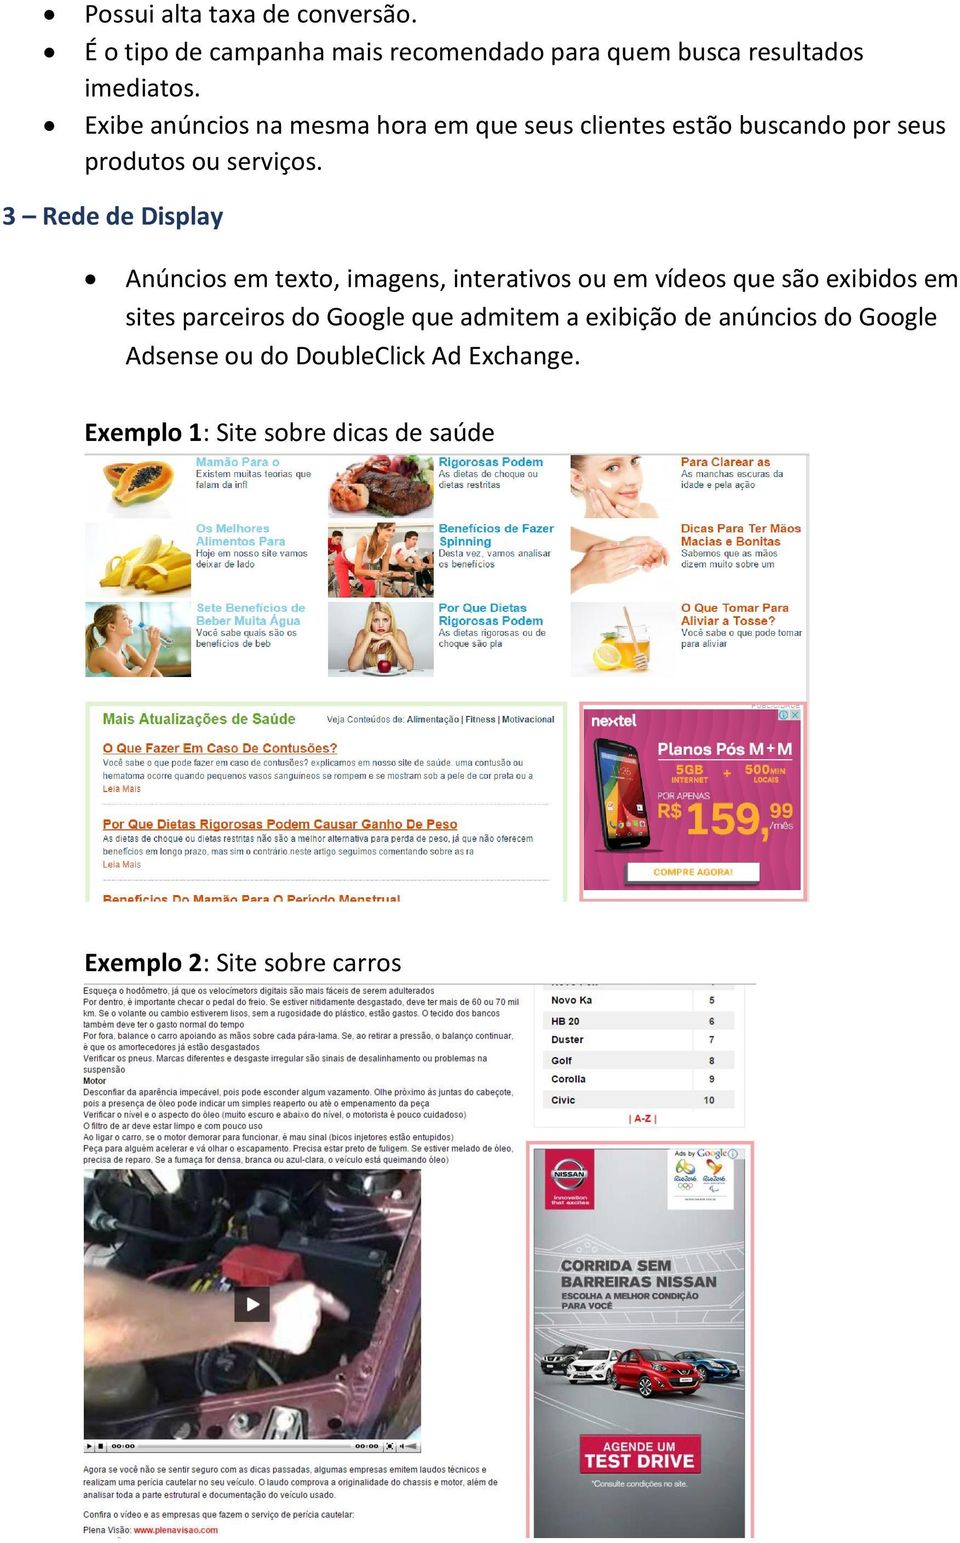 3 Rede de Display Anúncios em texto, imagens, interativos ou em vídeos que são exibidos em sites parceiros do Google